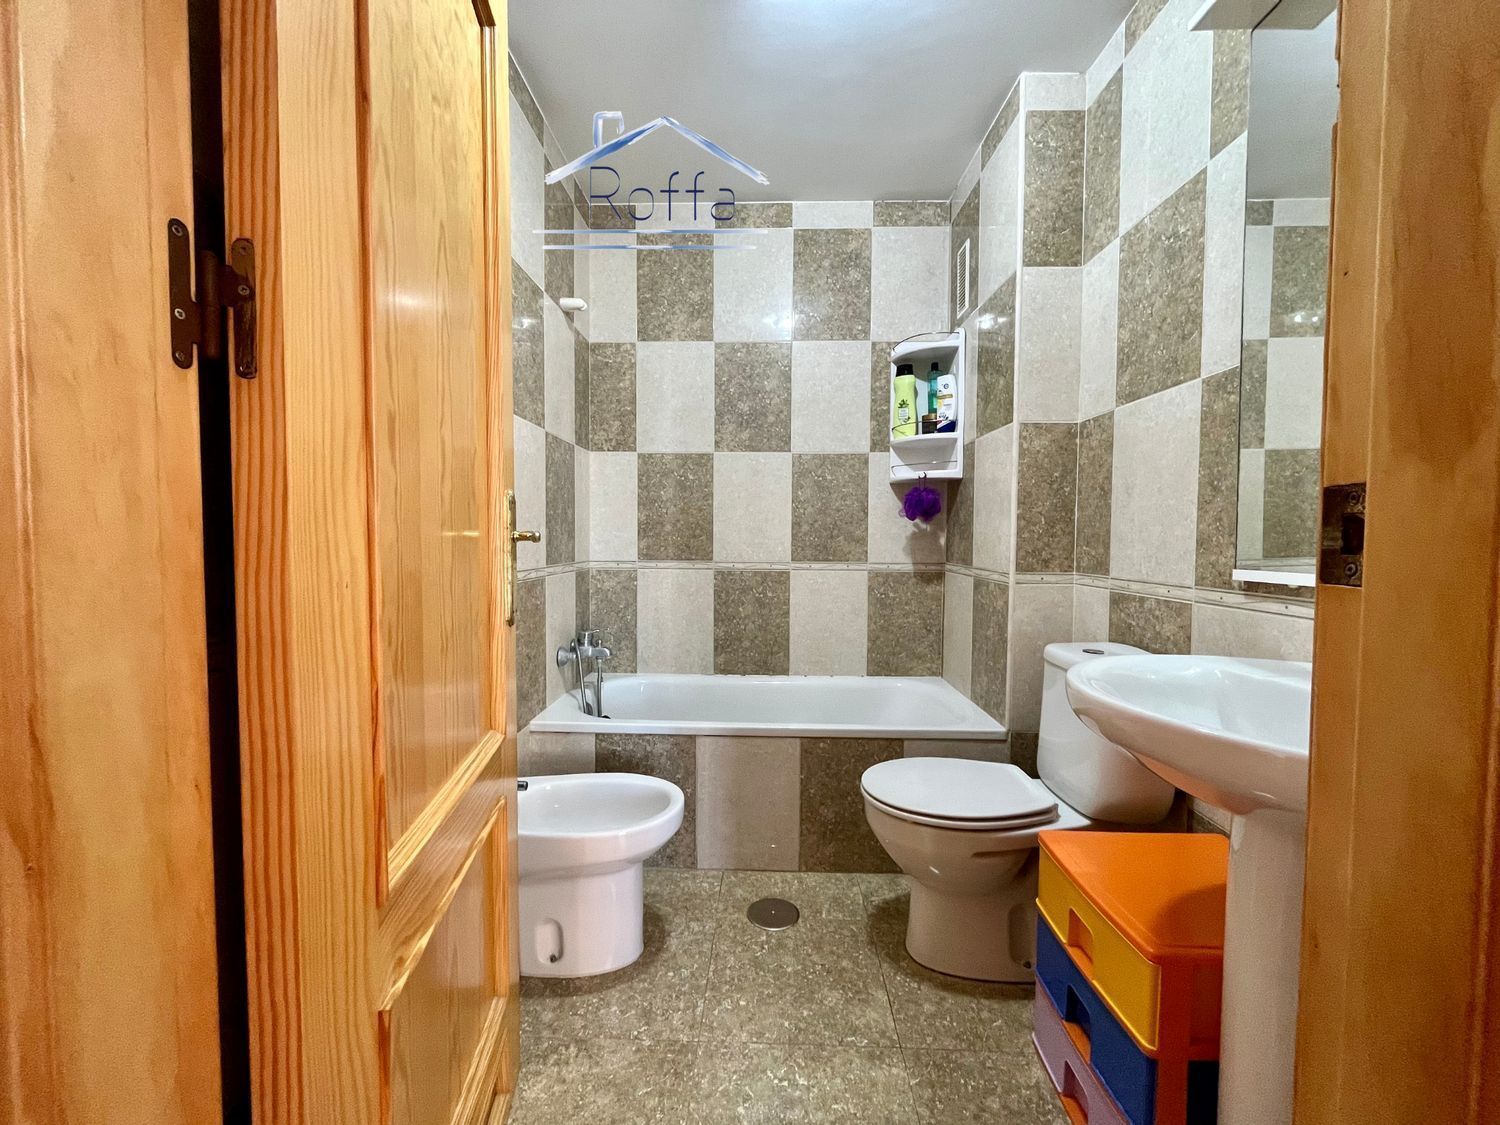 Salobreña, Granada, 2 Bedrooms Bedrooms, ,1 BathroomBathrooms,Apartment,For Sale